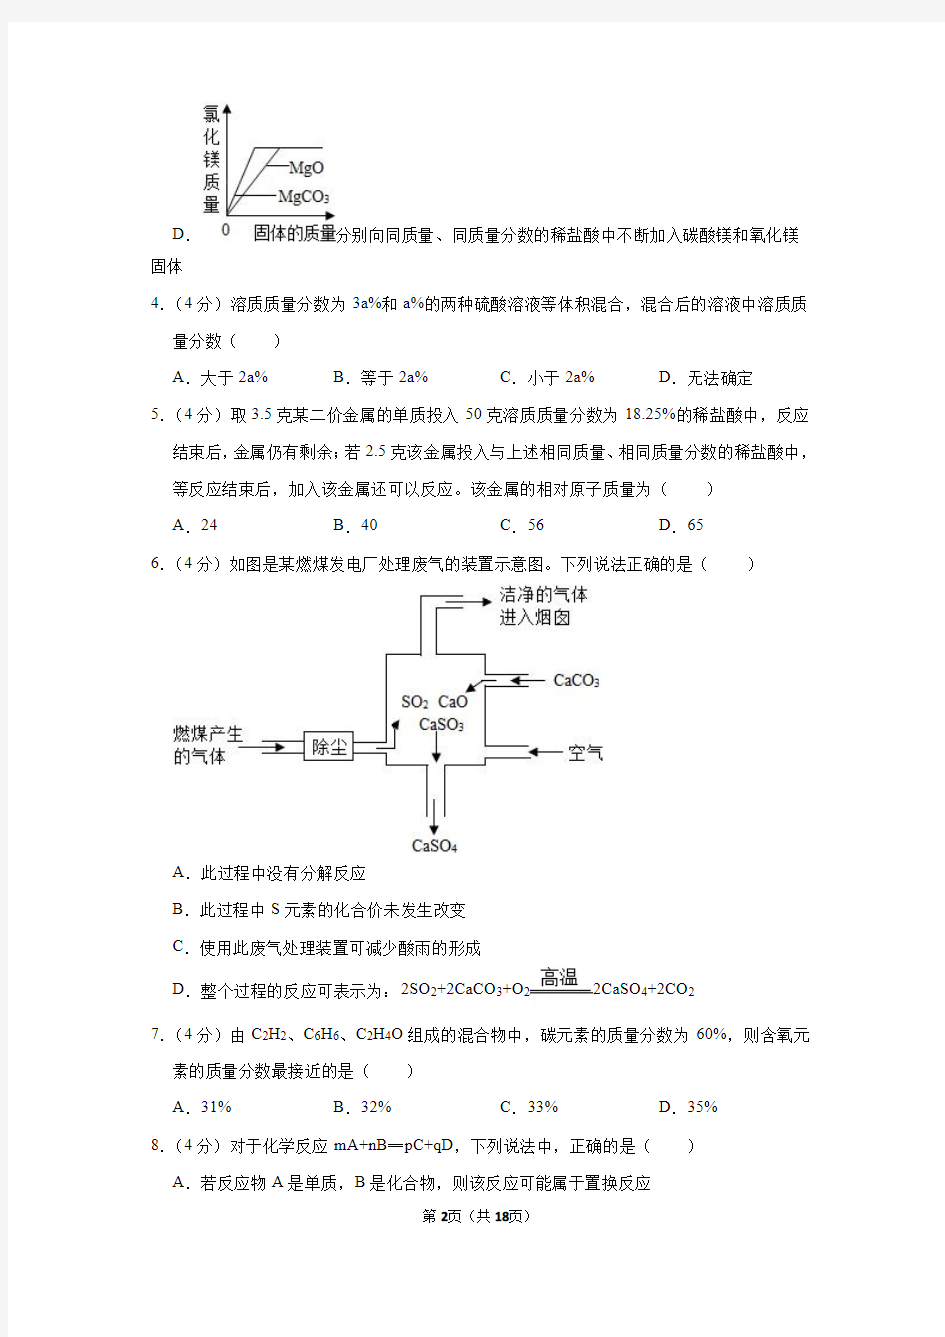 2020-2021学年江苏省扬州中学高一(上)开学化学试卷